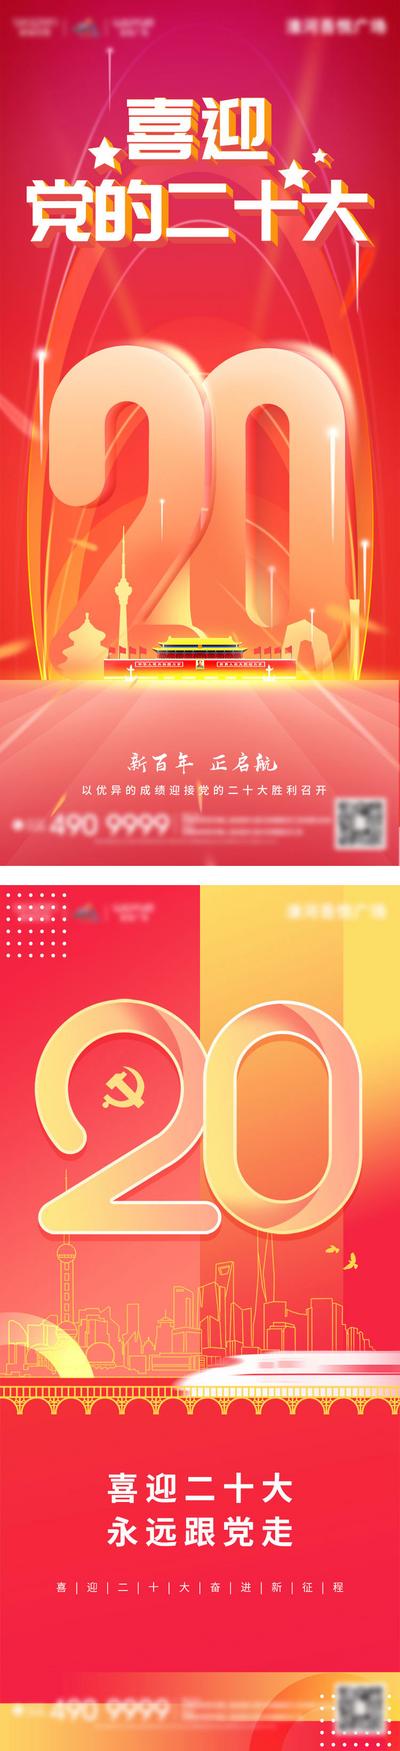 南门网 广告 海报 地产 国庆节 医美 旅游 活动 教育 节日 红金